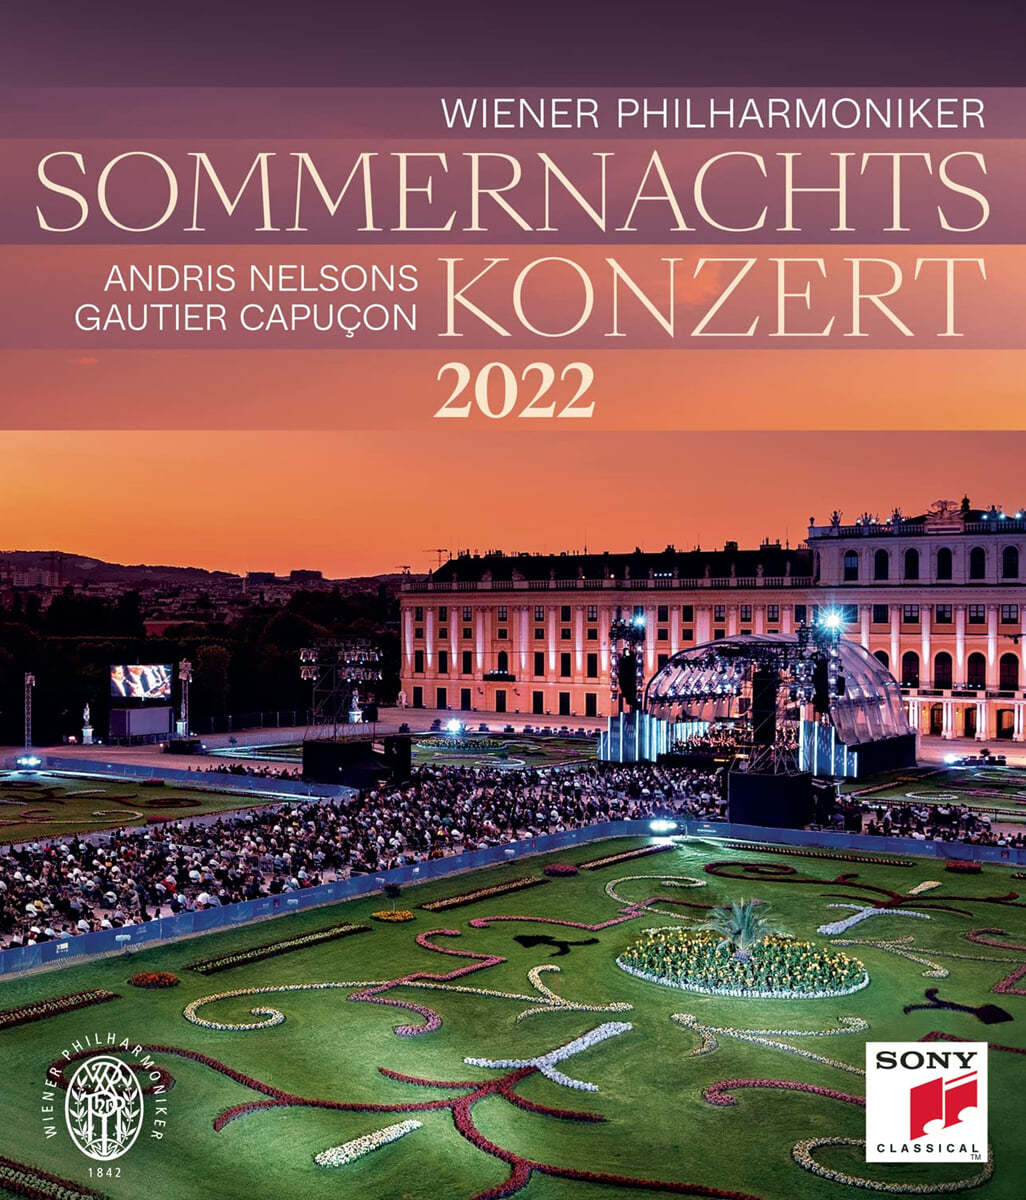 2022 빈 필하모닉 여름 음악회 [썸머 나잇 콘서트] (Summer Night Concert 2022 - Andris Nelsons) [블루레이]